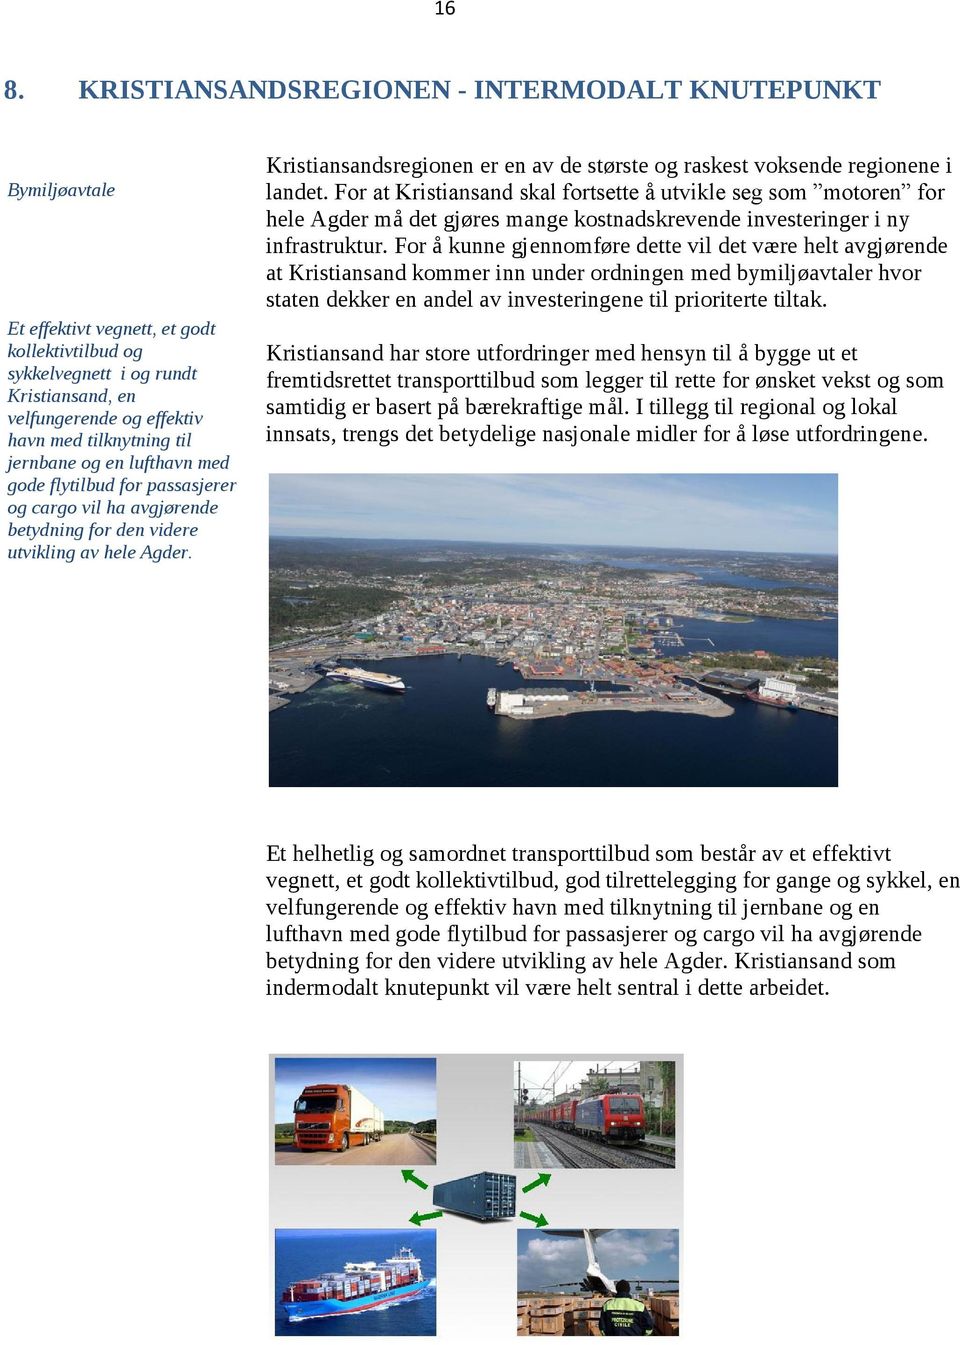 Kristiansandsregionen er en av de største og raskest voksende regionene i landet.